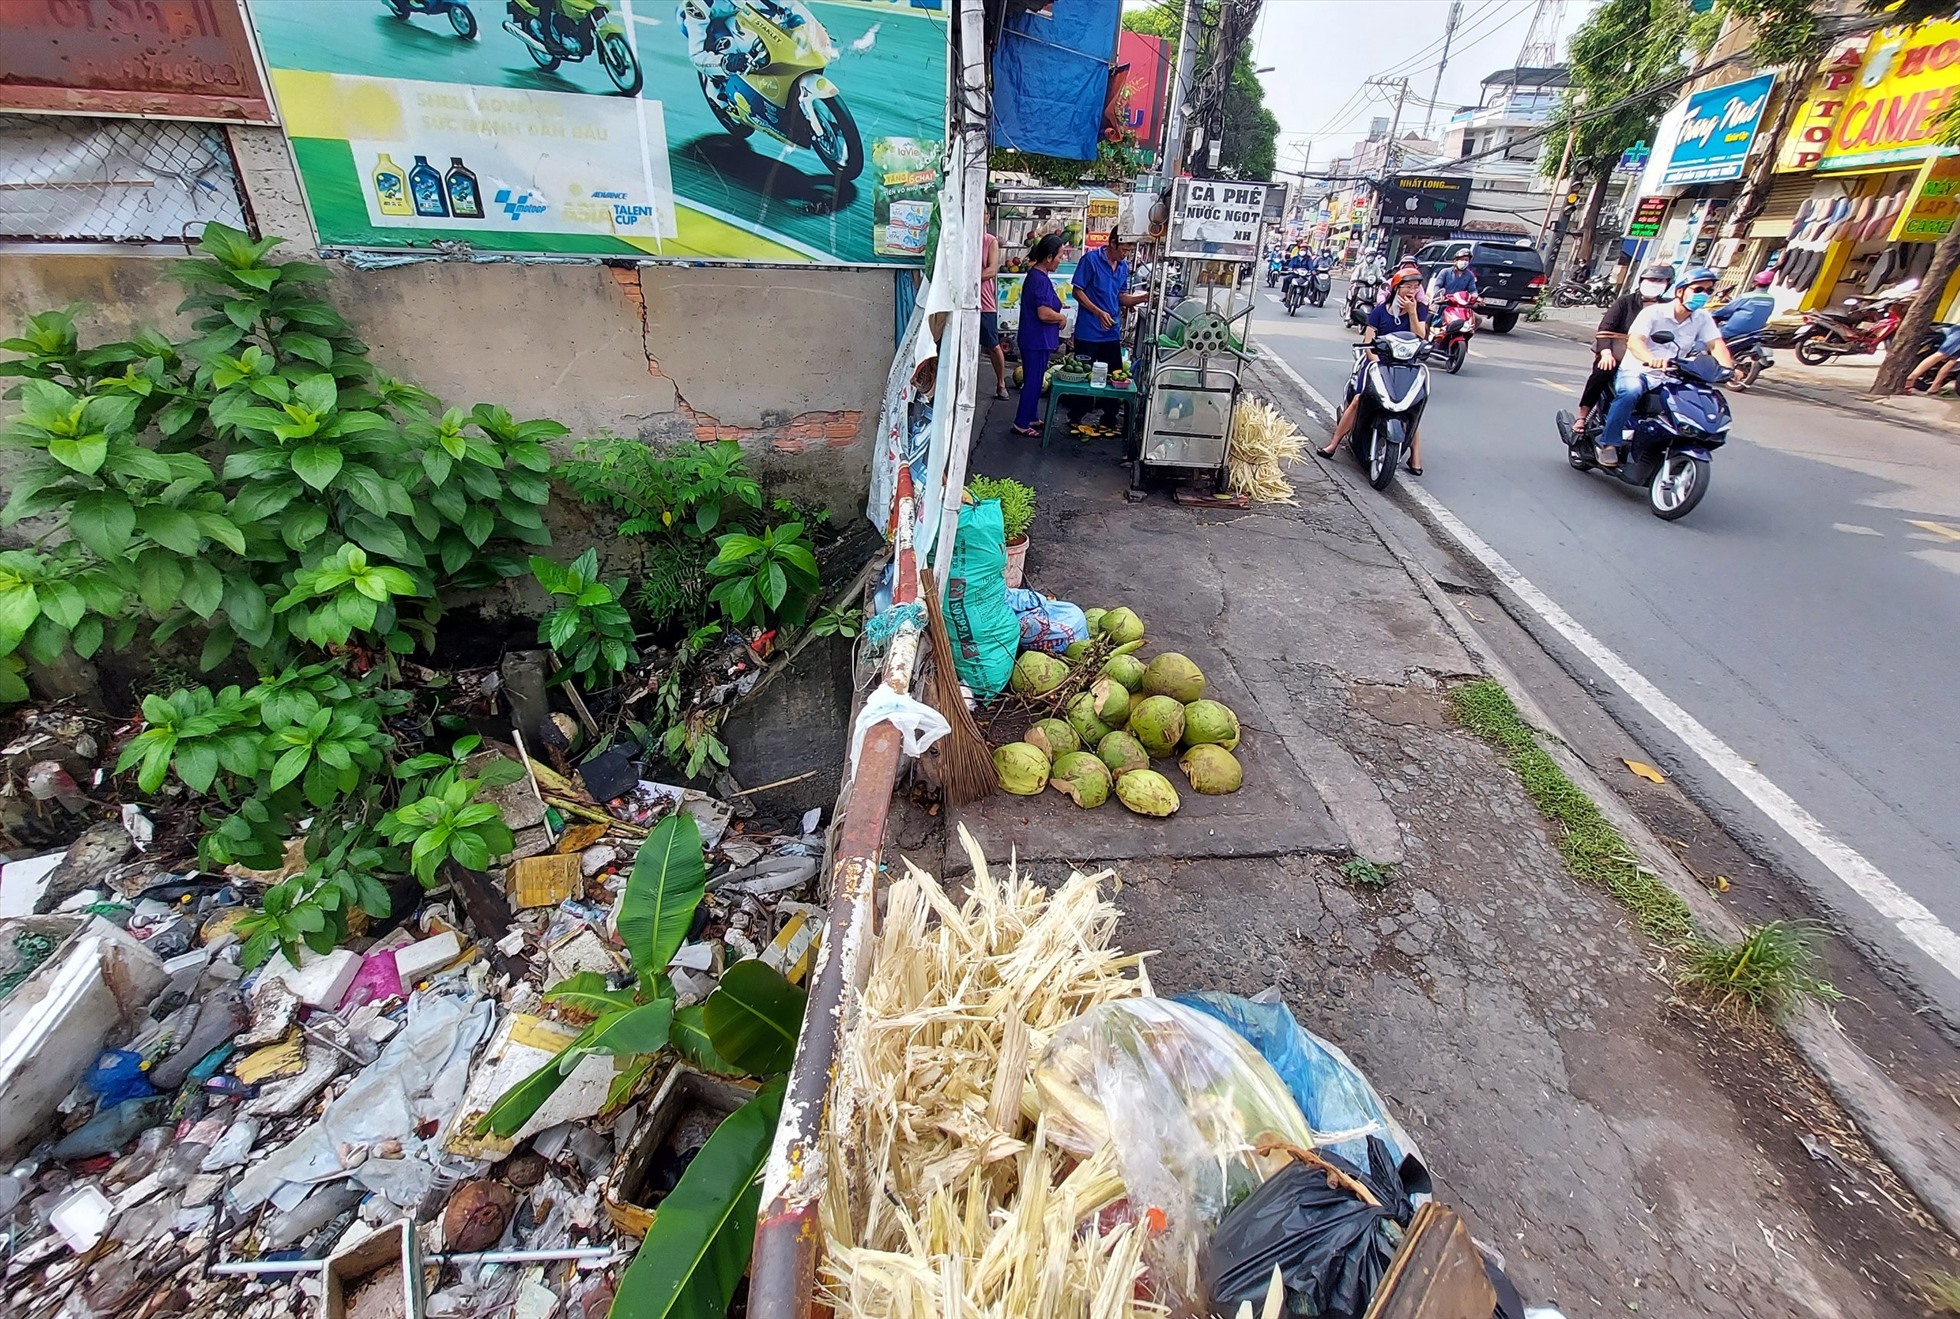 Tương tự, đủ loại rác thải bịt miệng cống trên đường Tô Ngọc Vân (phường Linh Đông) - điểm ngập của Thành phố Thủ Đức mỗi khi mưa lớn.